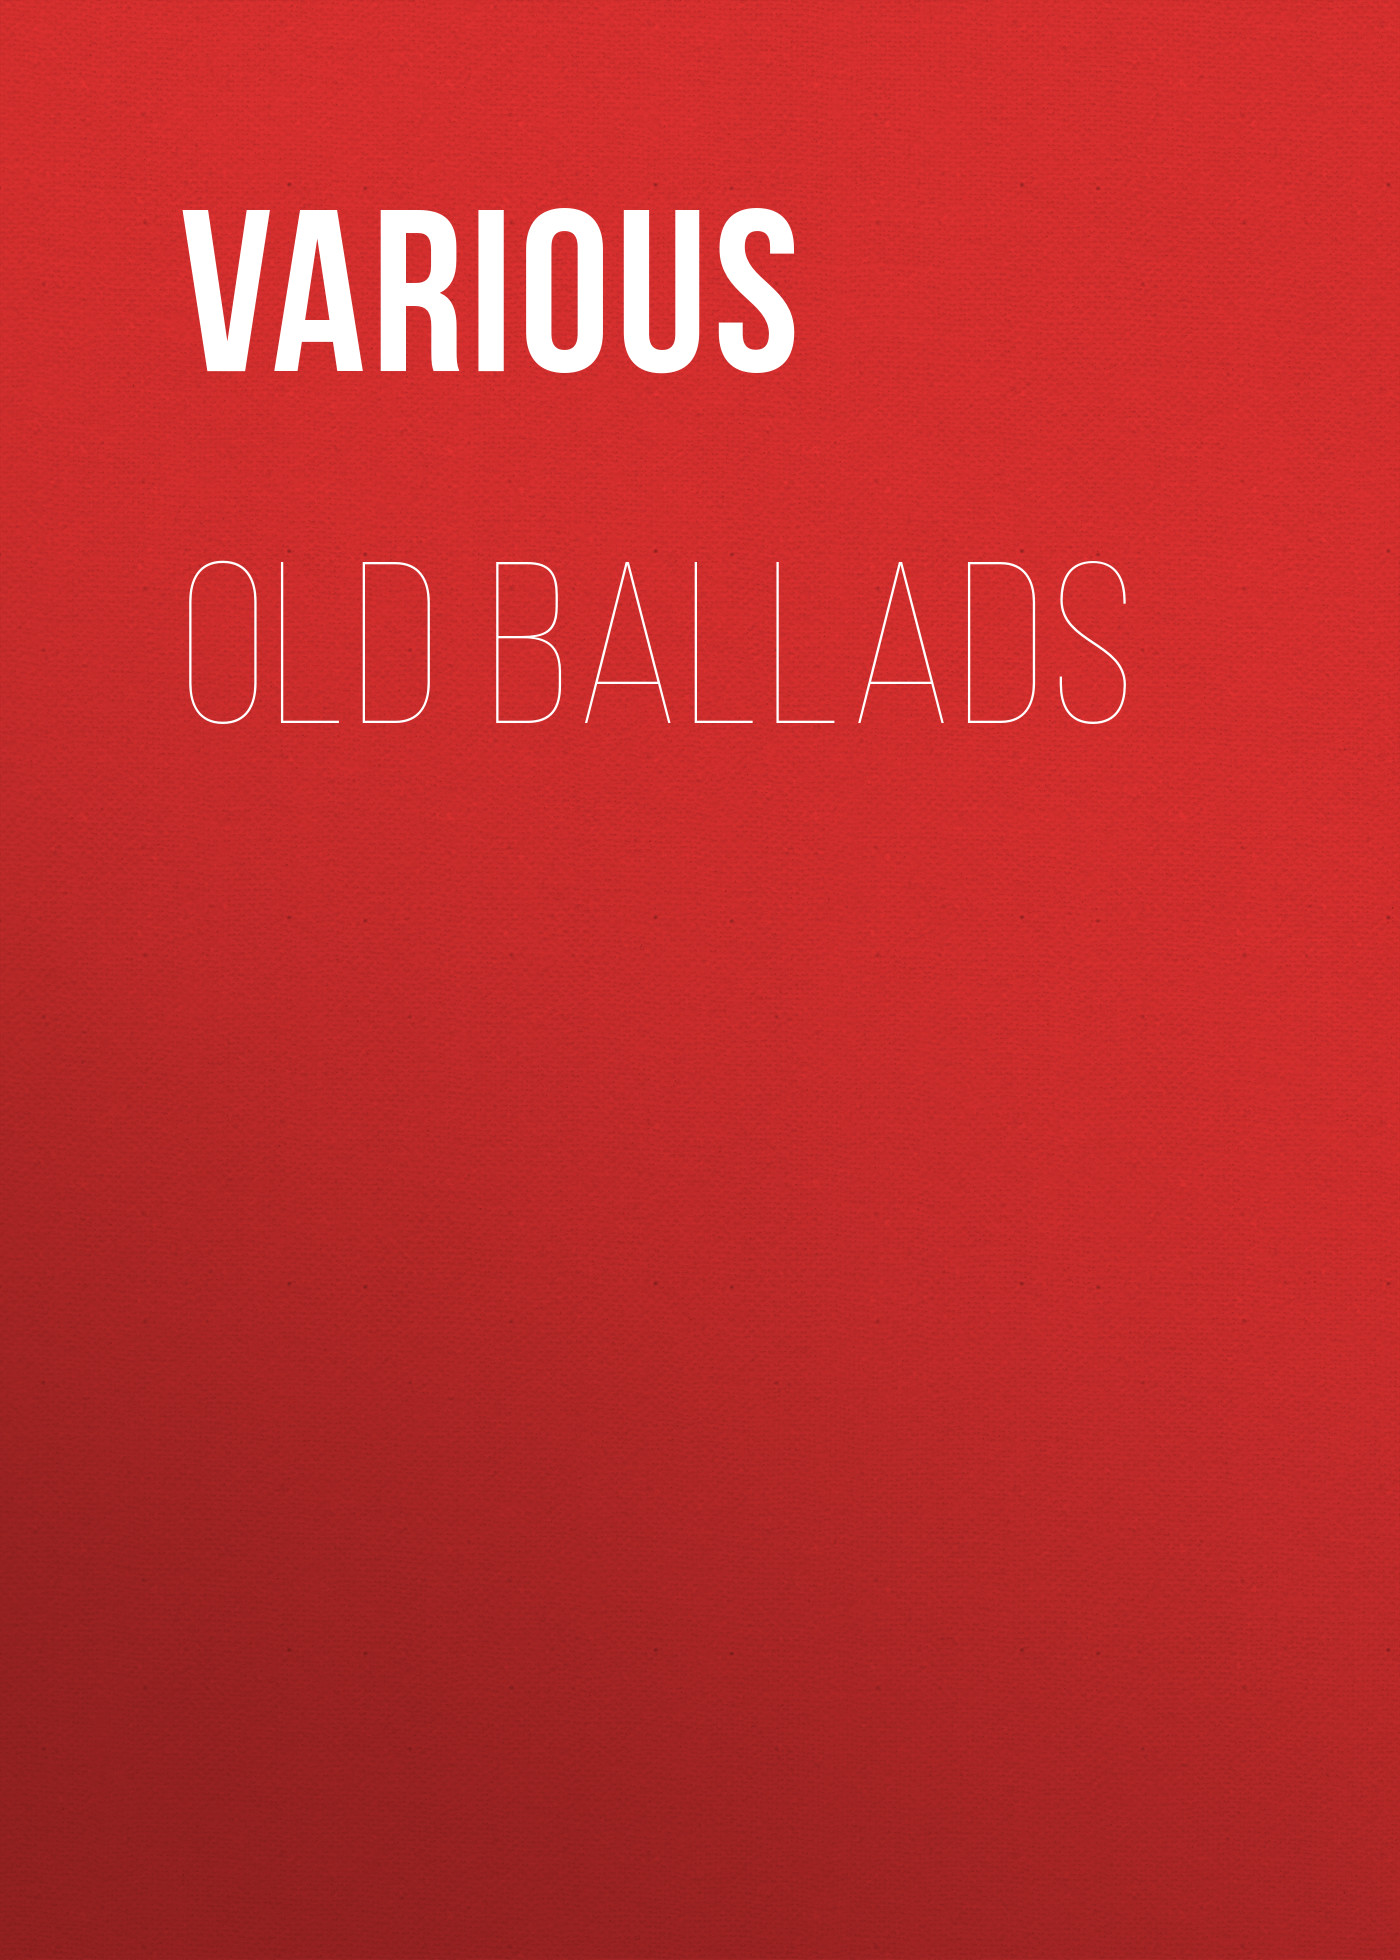 Old Ballads